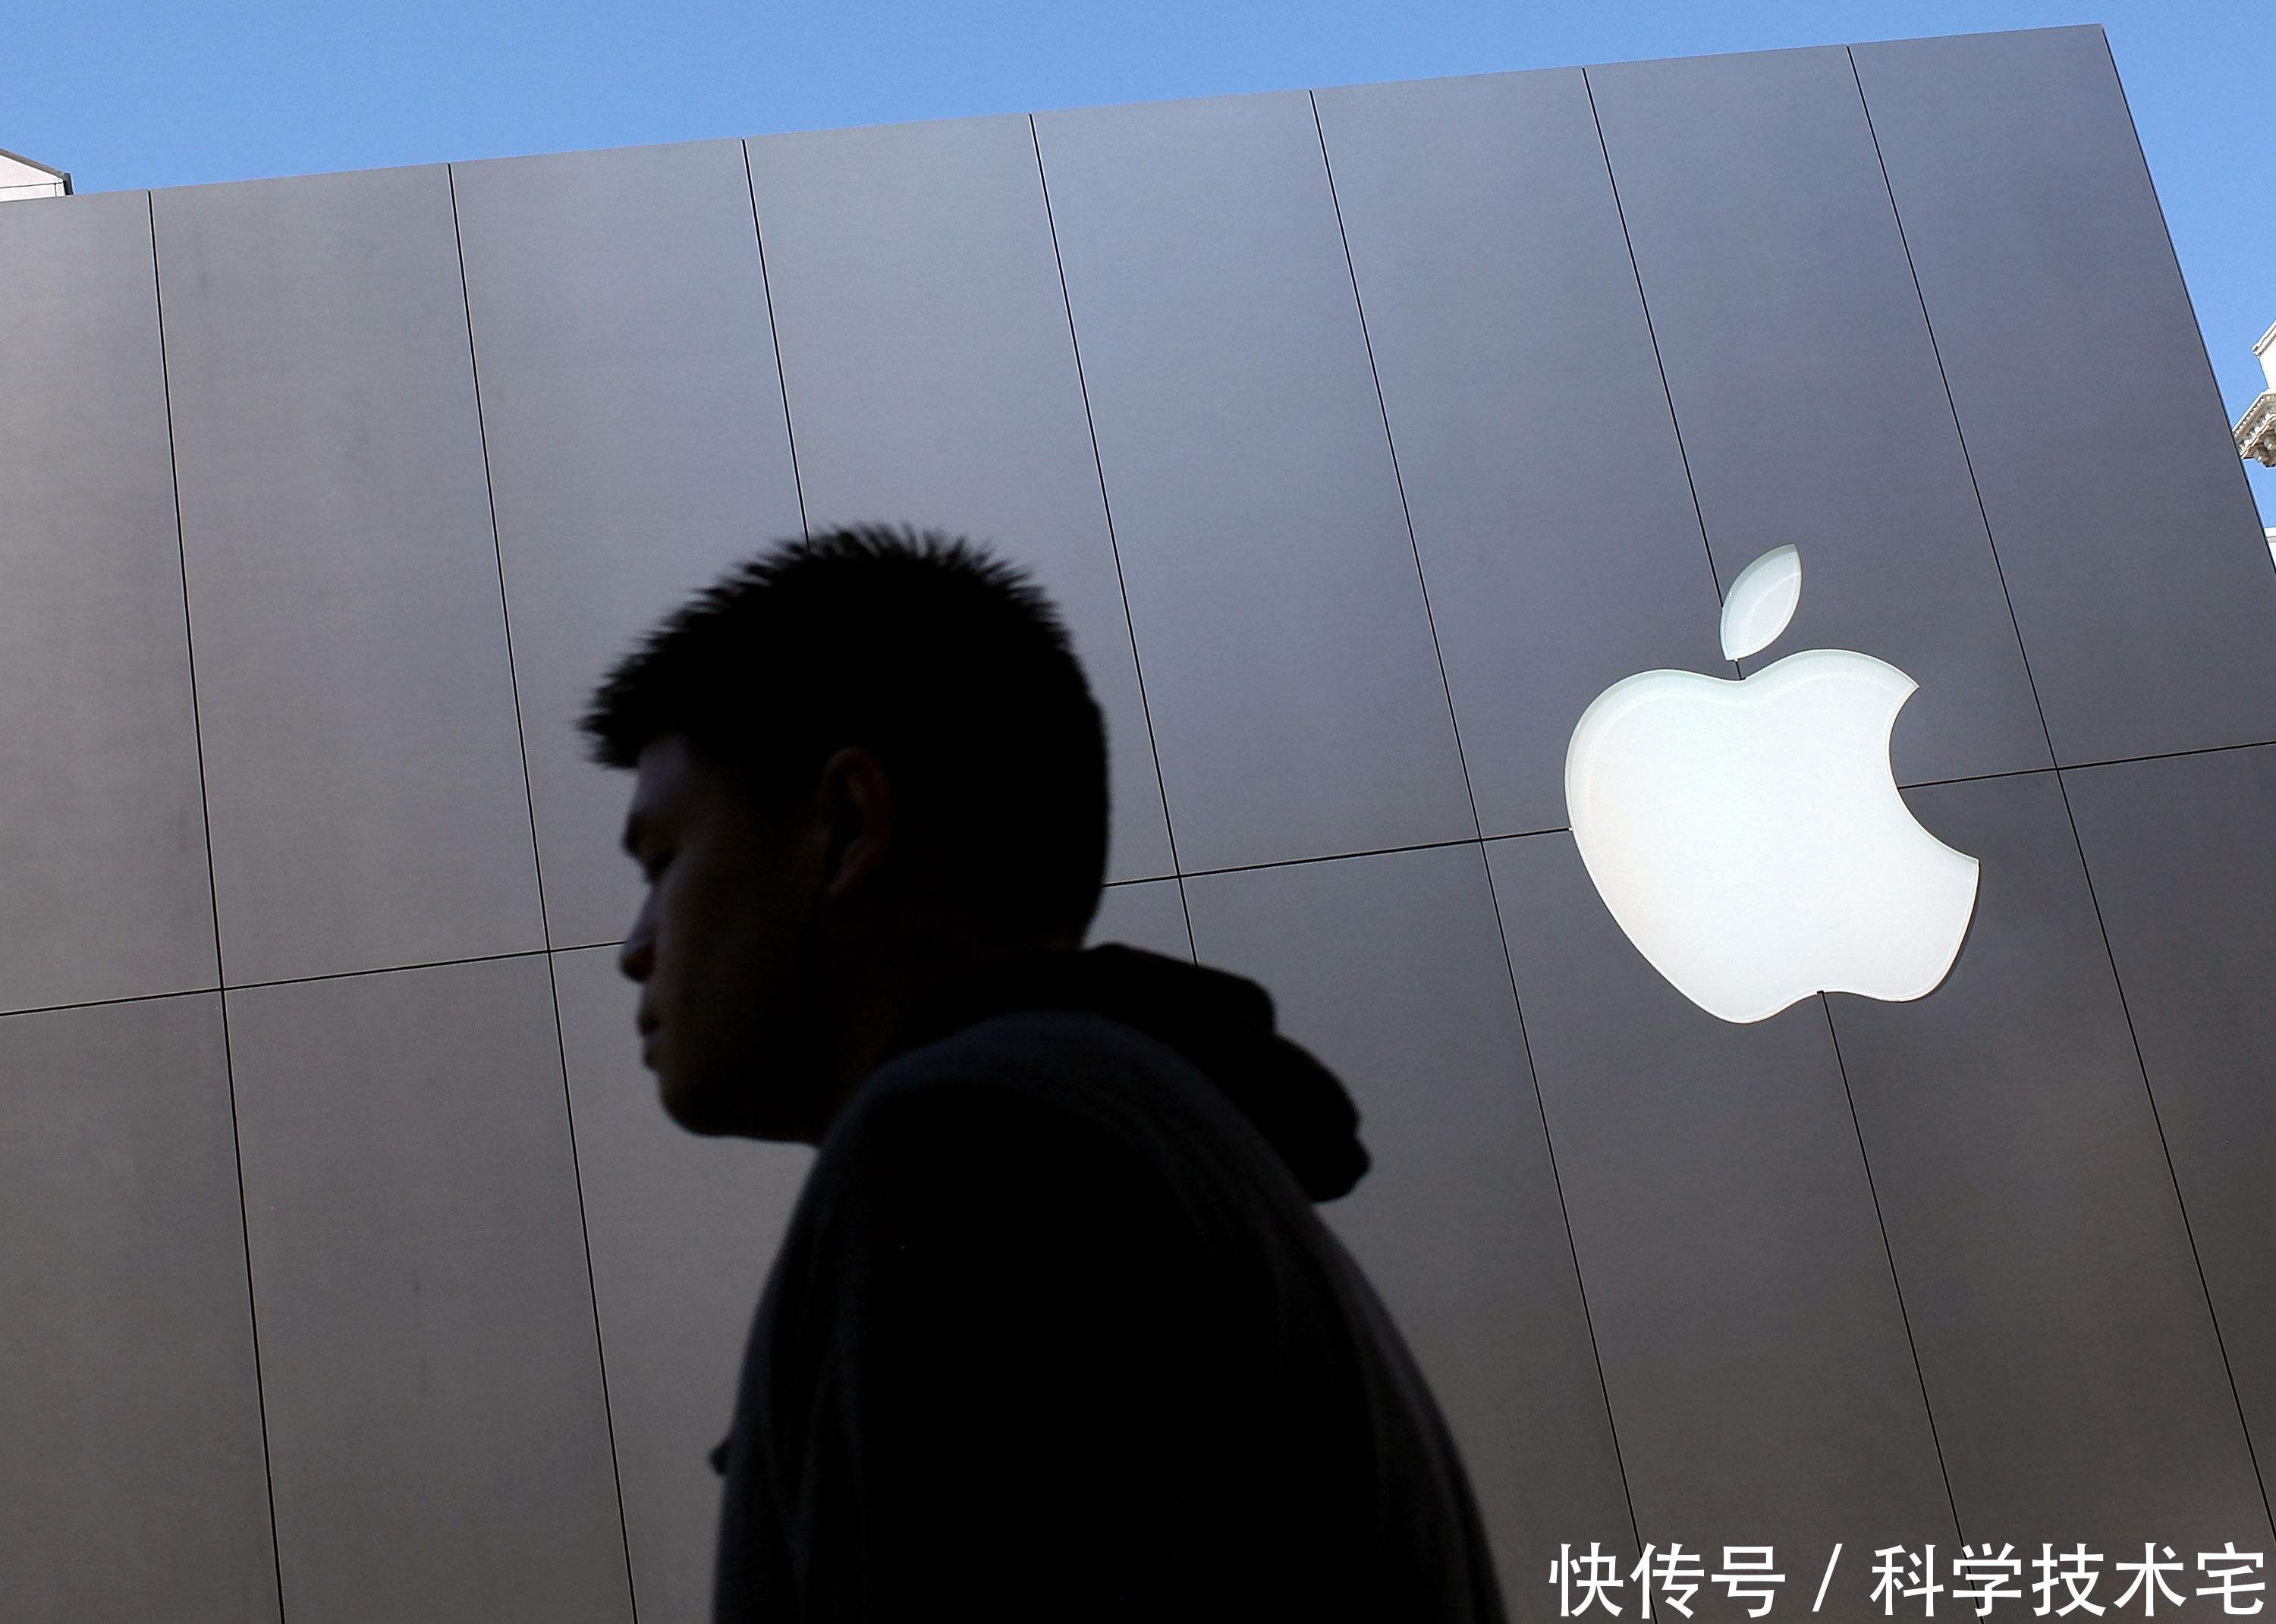 苹果公司股价下滑,美国高官认为中国偷取iPh